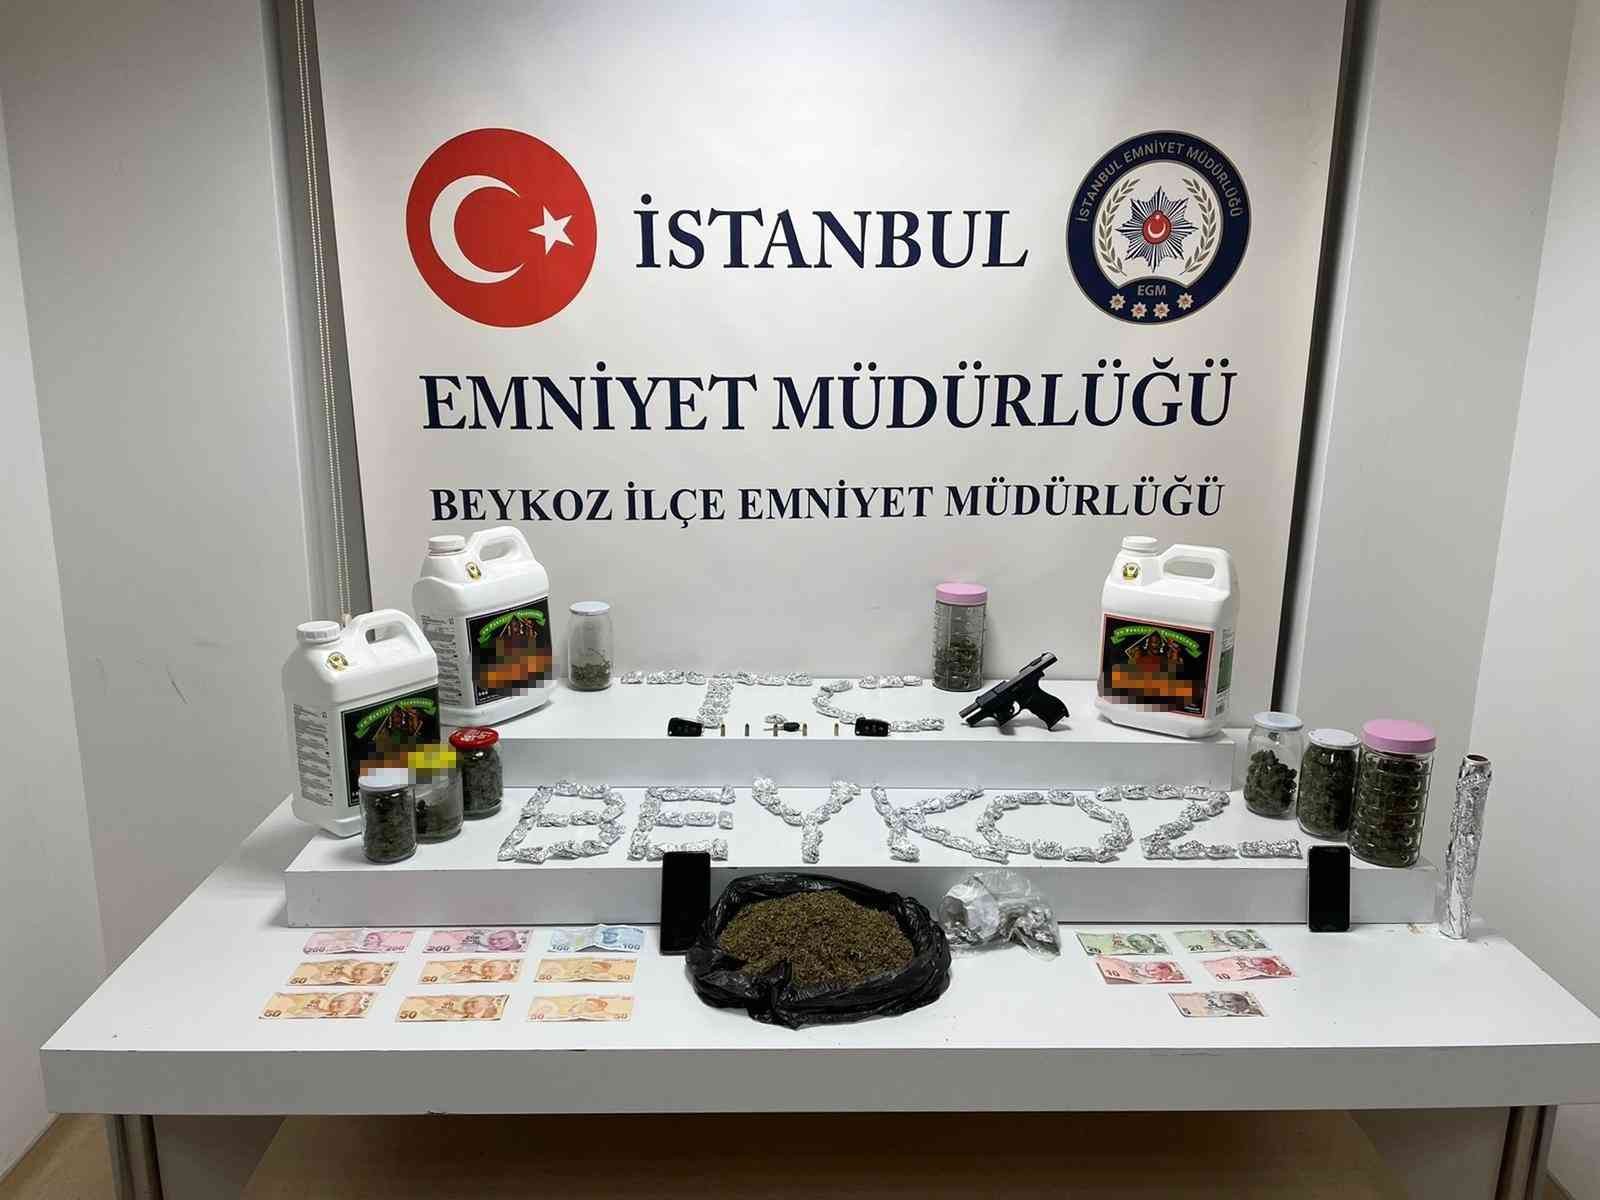 Uyuşturucuları annesinin evinde saklayan uyuşturucu satıcısı yakalandı #istanbul